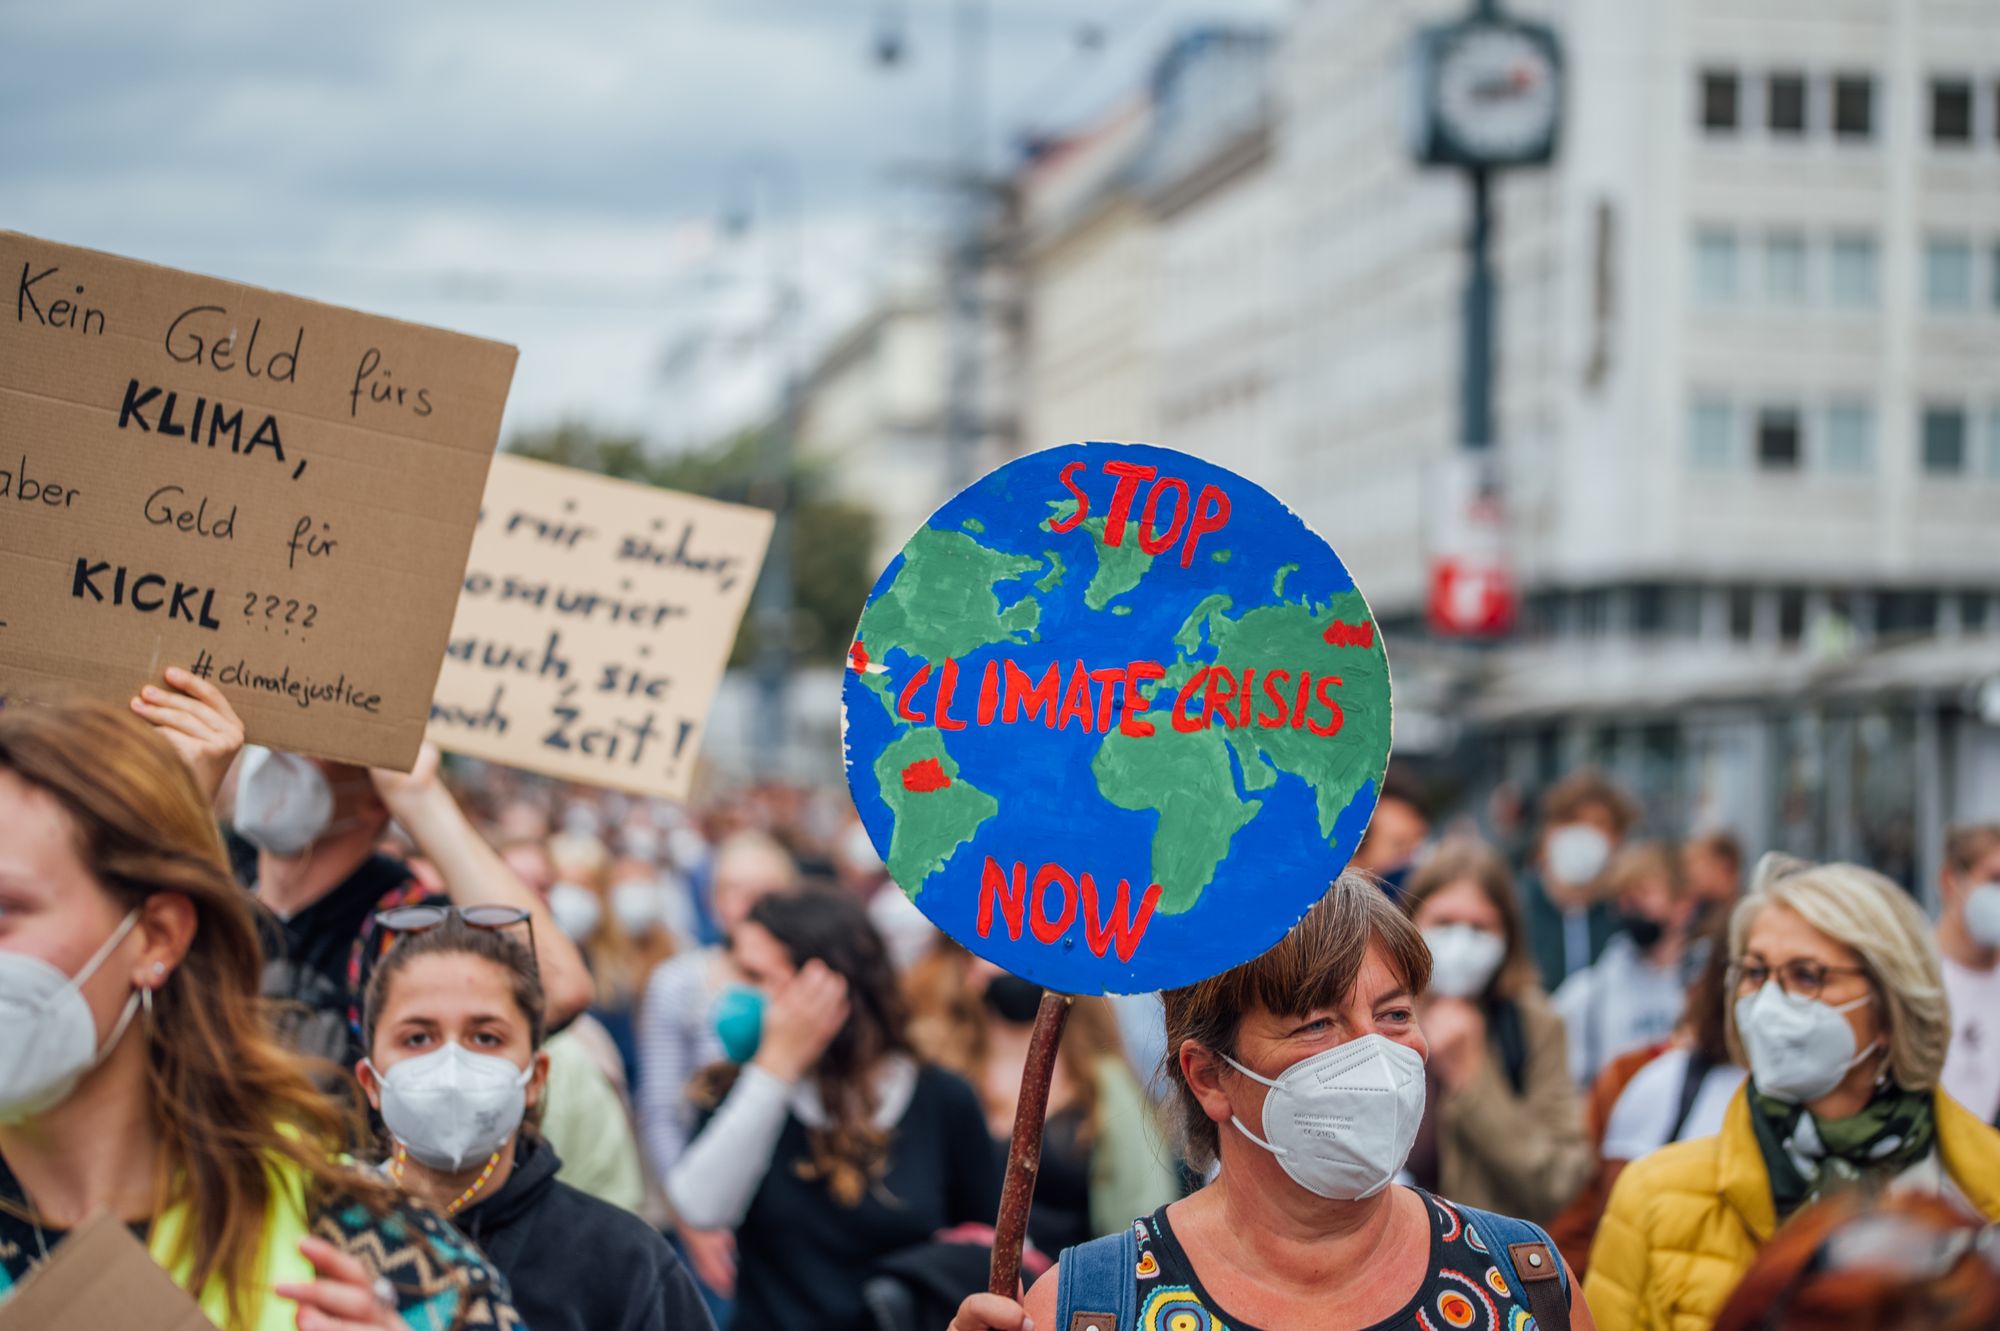 Klimaaktivist:innen demonstrieren dafür, dass die Politik mehr gegen den Klimawandel unternimmt. Foto (unverändert) von 